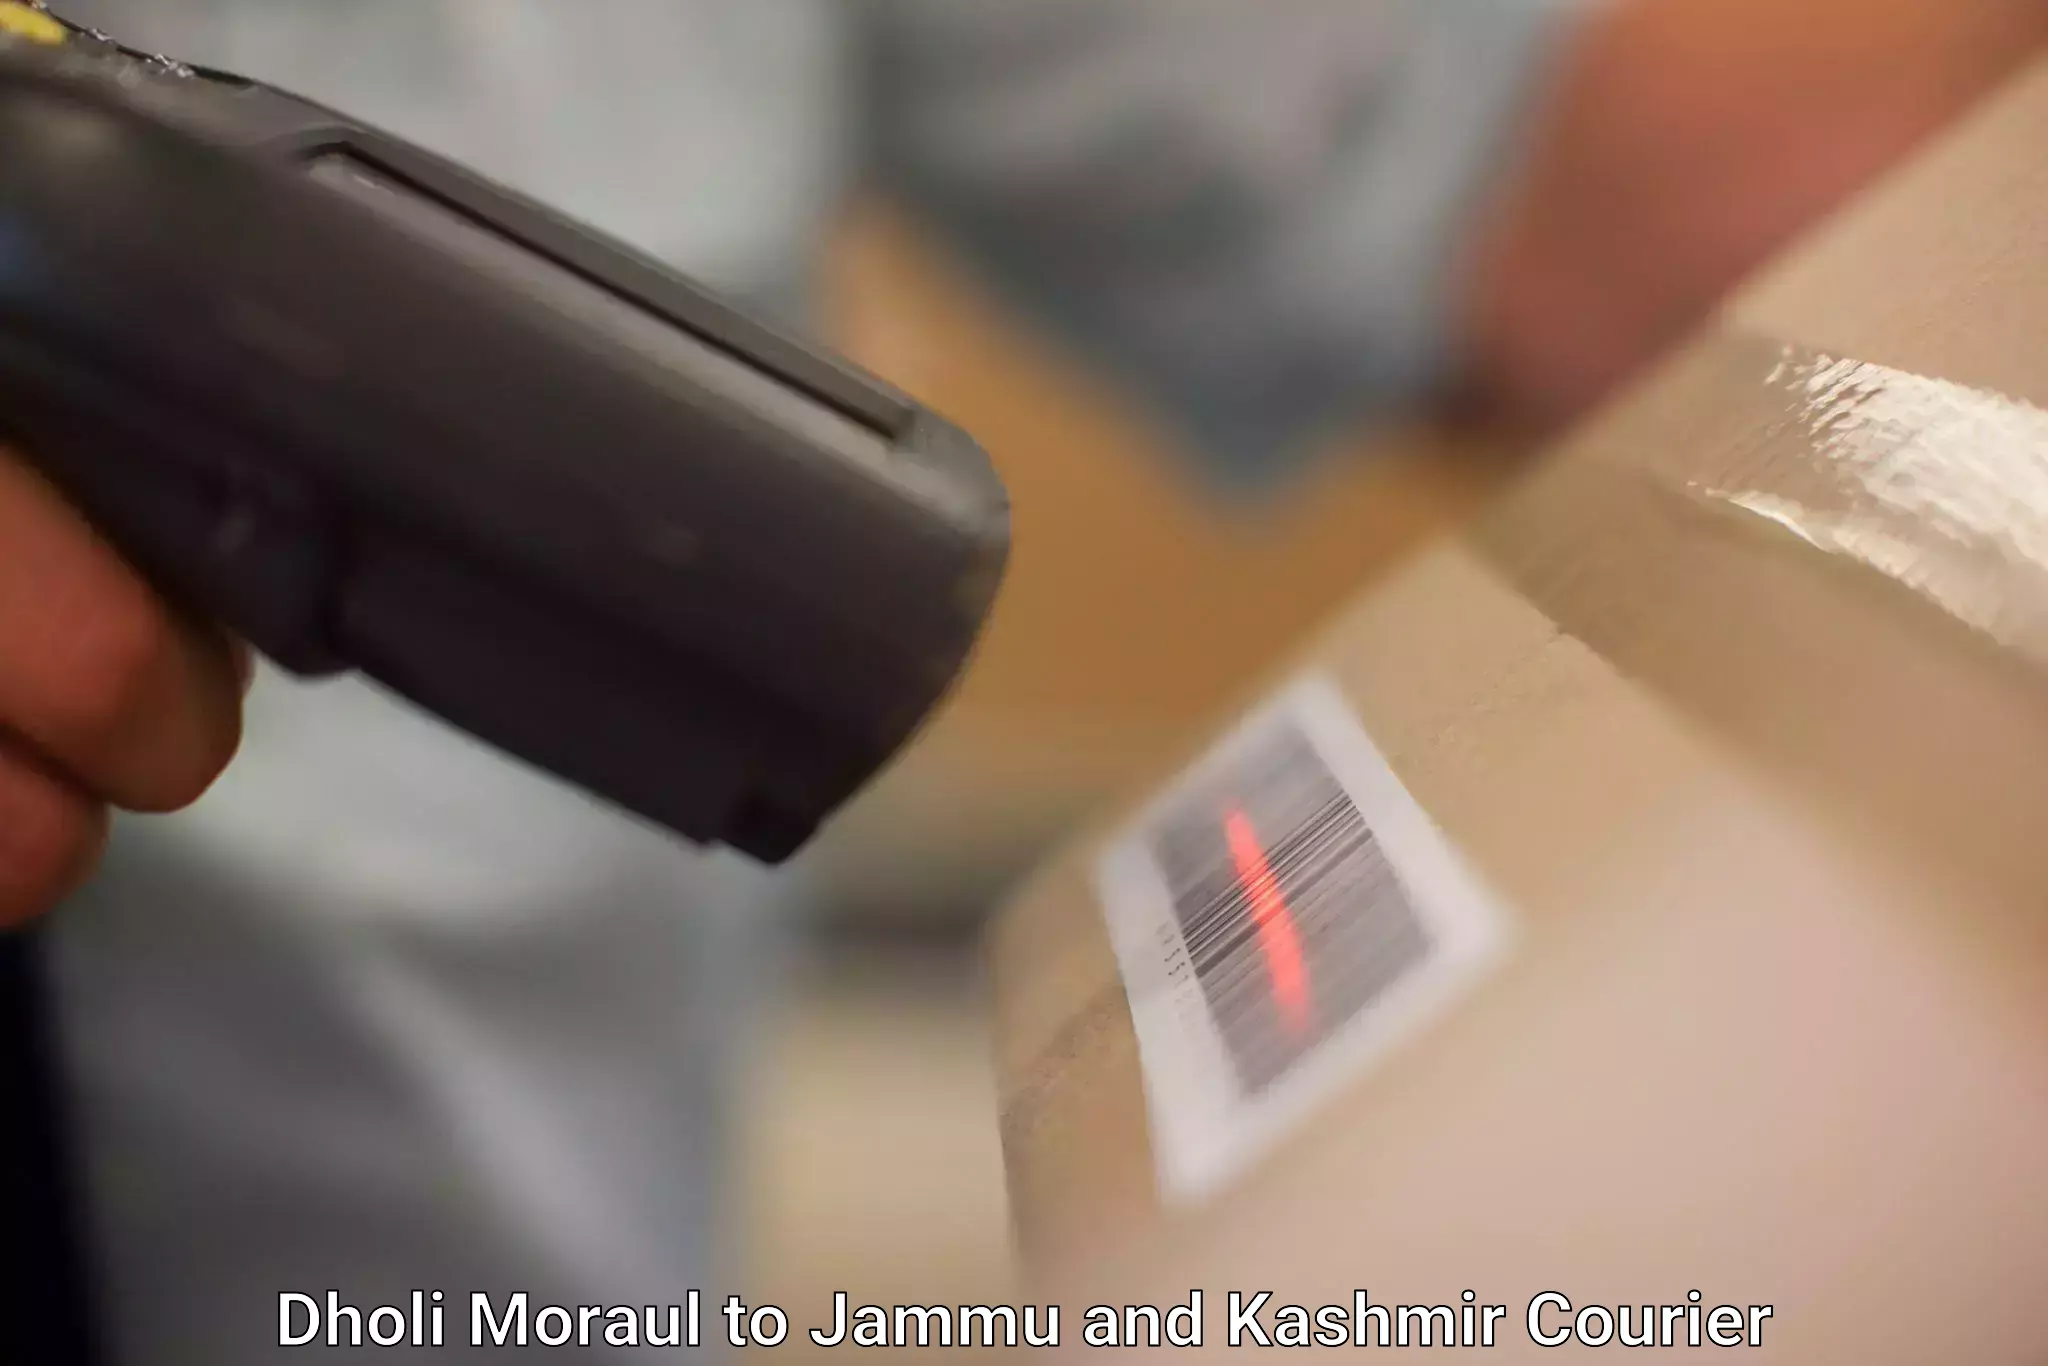 Efficient parcel tracking Dholi Moraul to Kargil